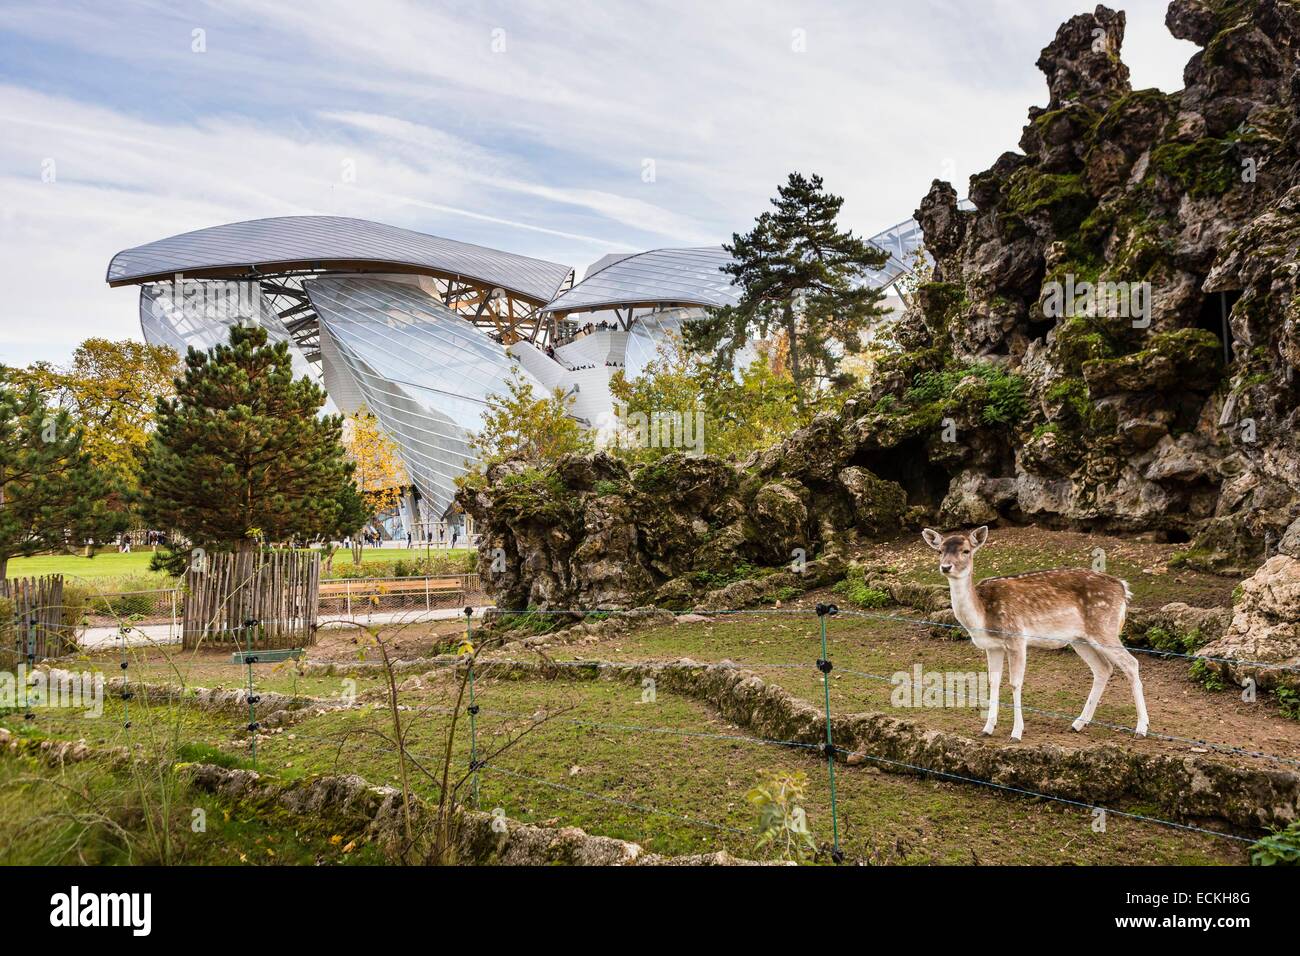 France, Paris, Bois de Boulogne, the Louis Vuitton Foundation by Stock Photo: 76648000 - Alamy